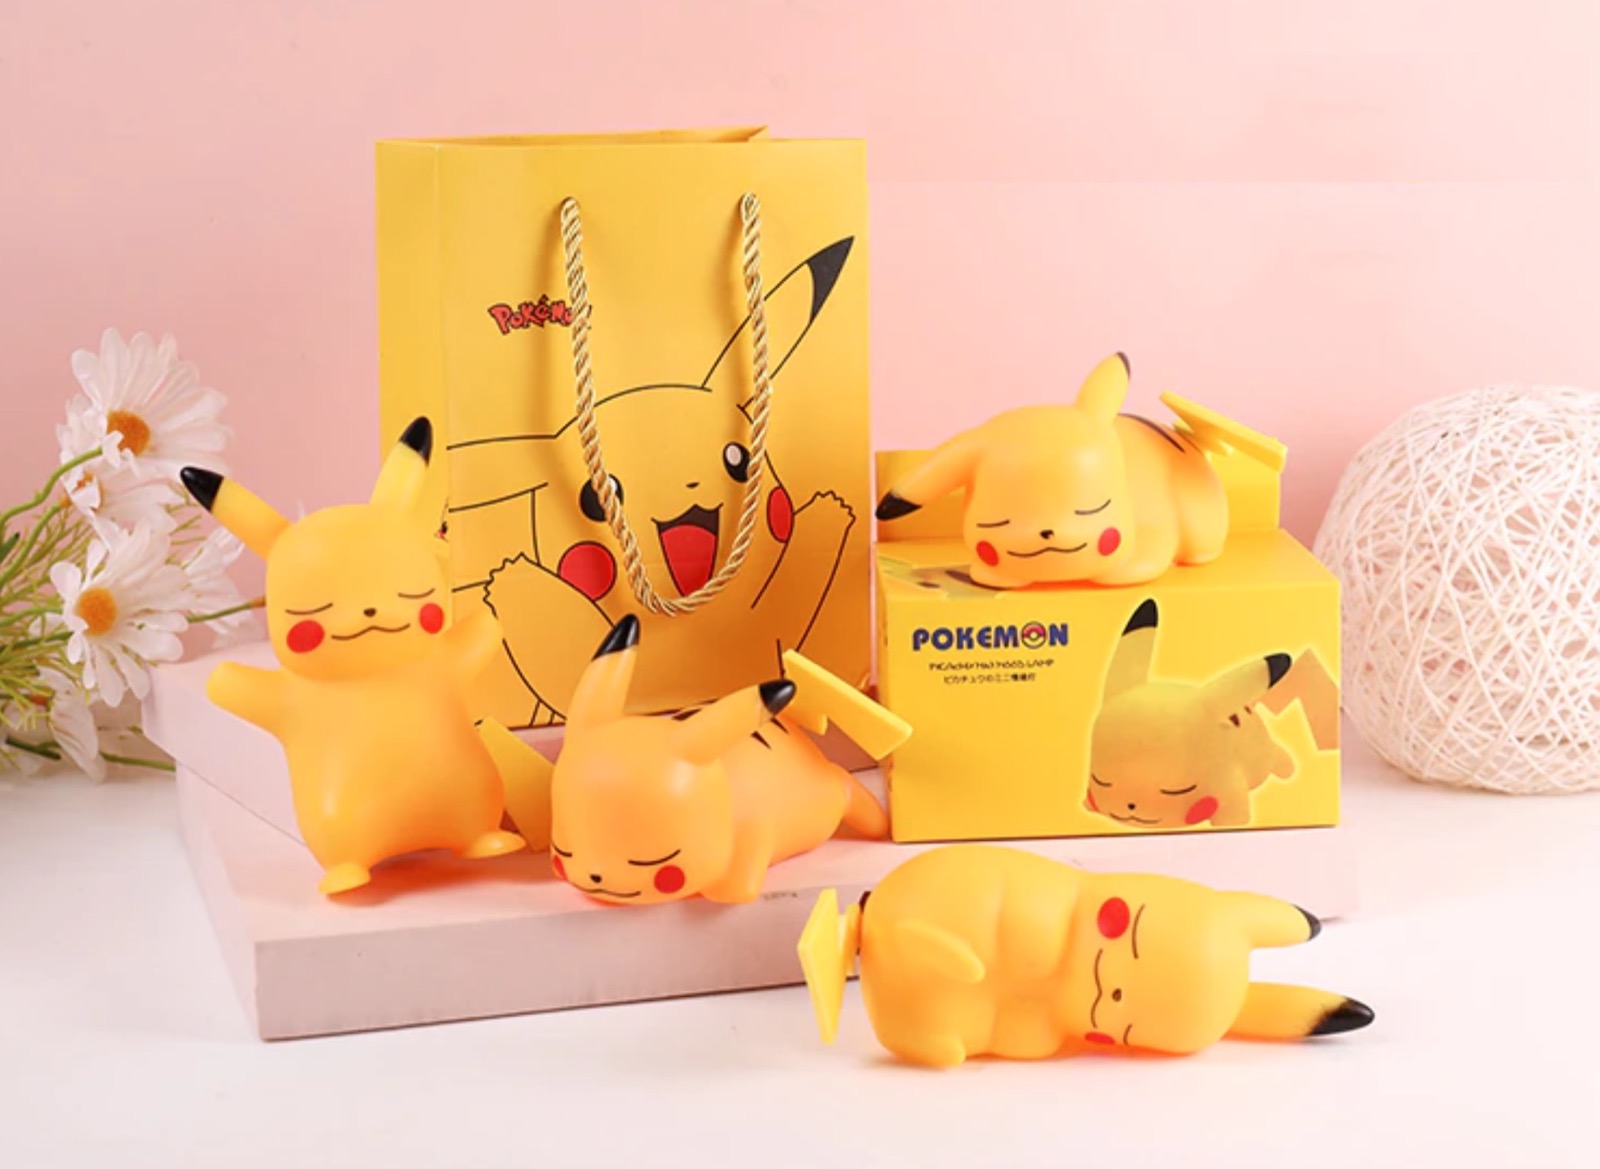 La lampada Pikachu per far dormire i bambini scontata a 3,29 € 